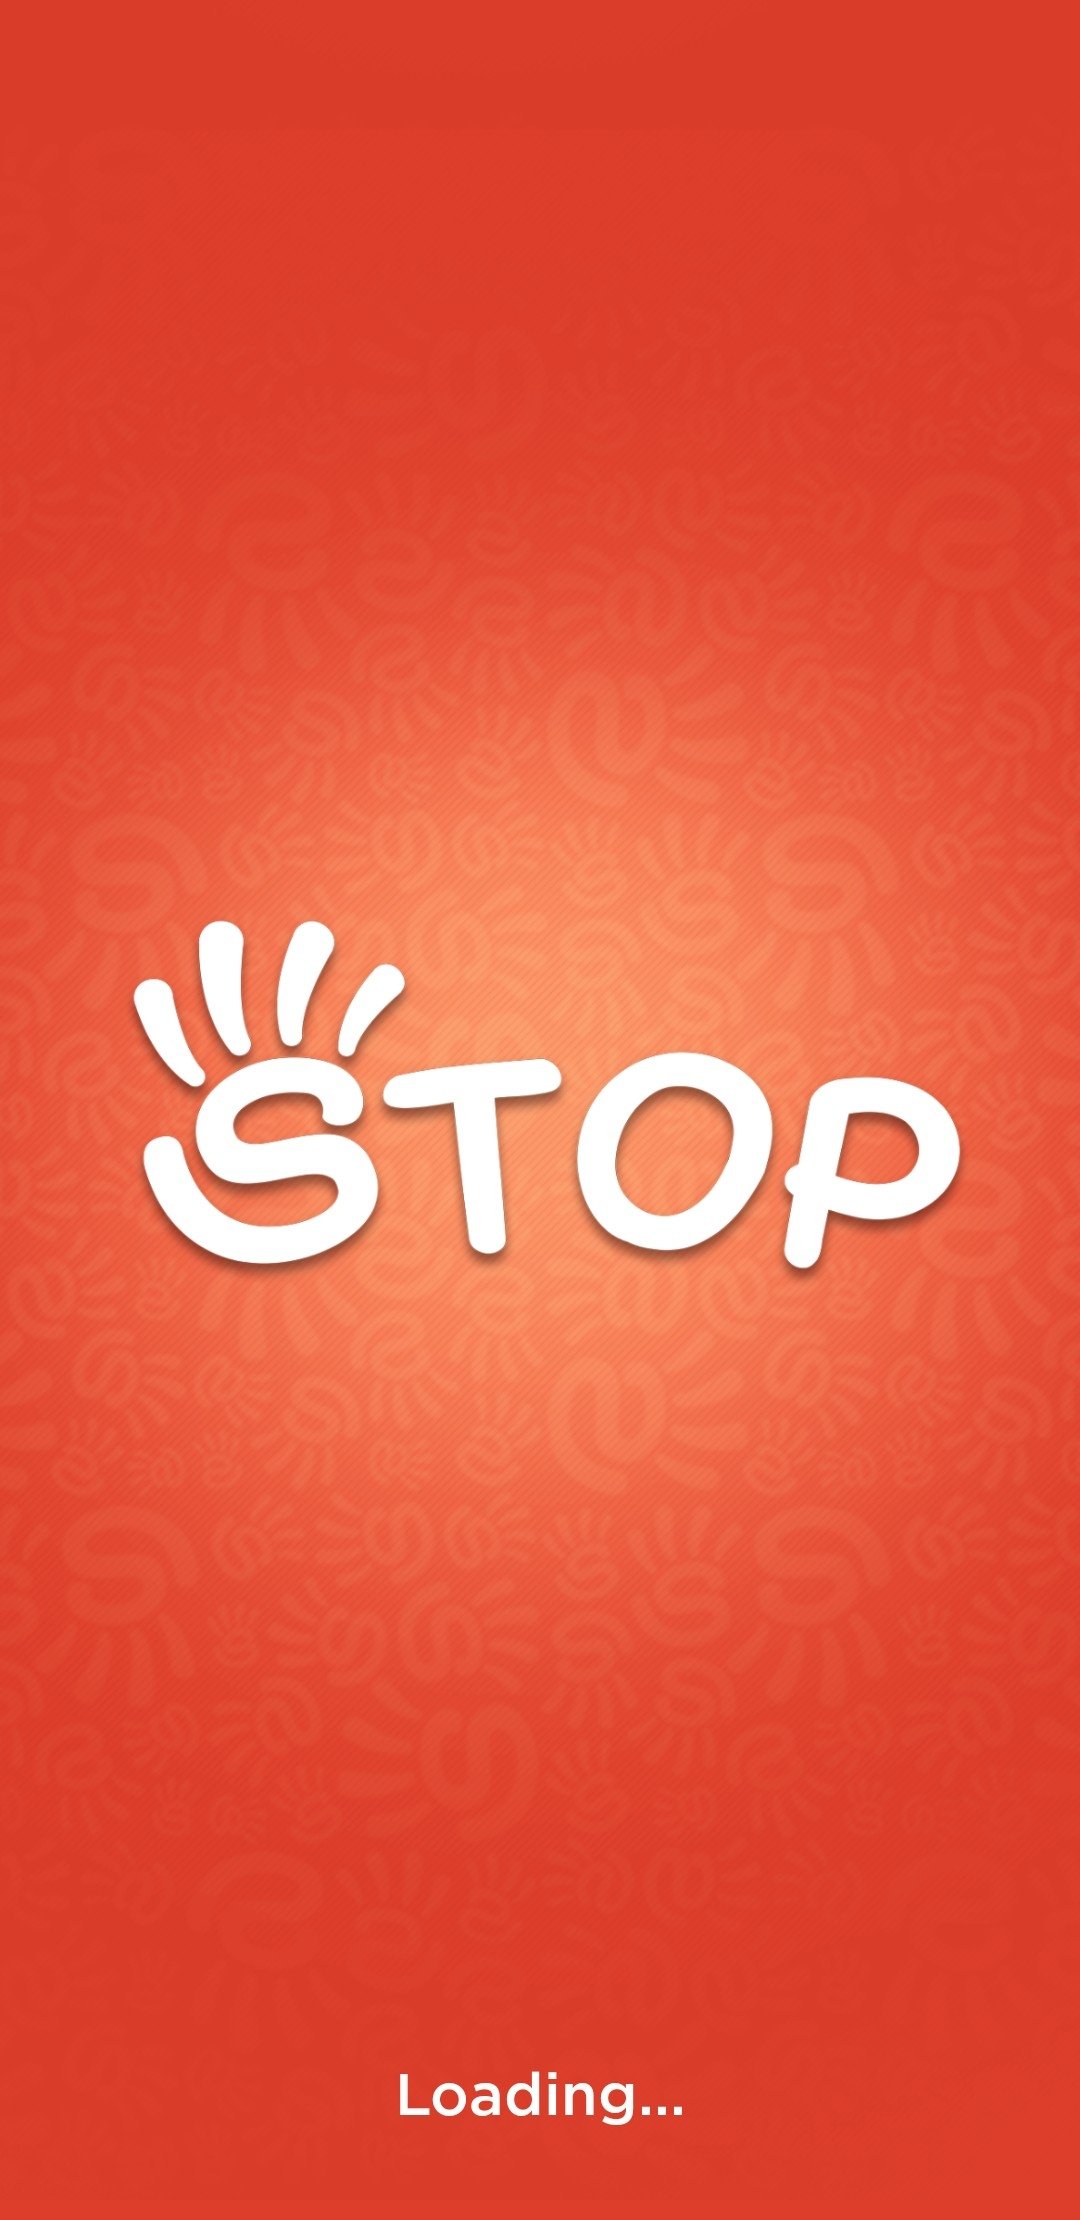 Download] Jogo denominado Stop disponível para Android - Menos Fios